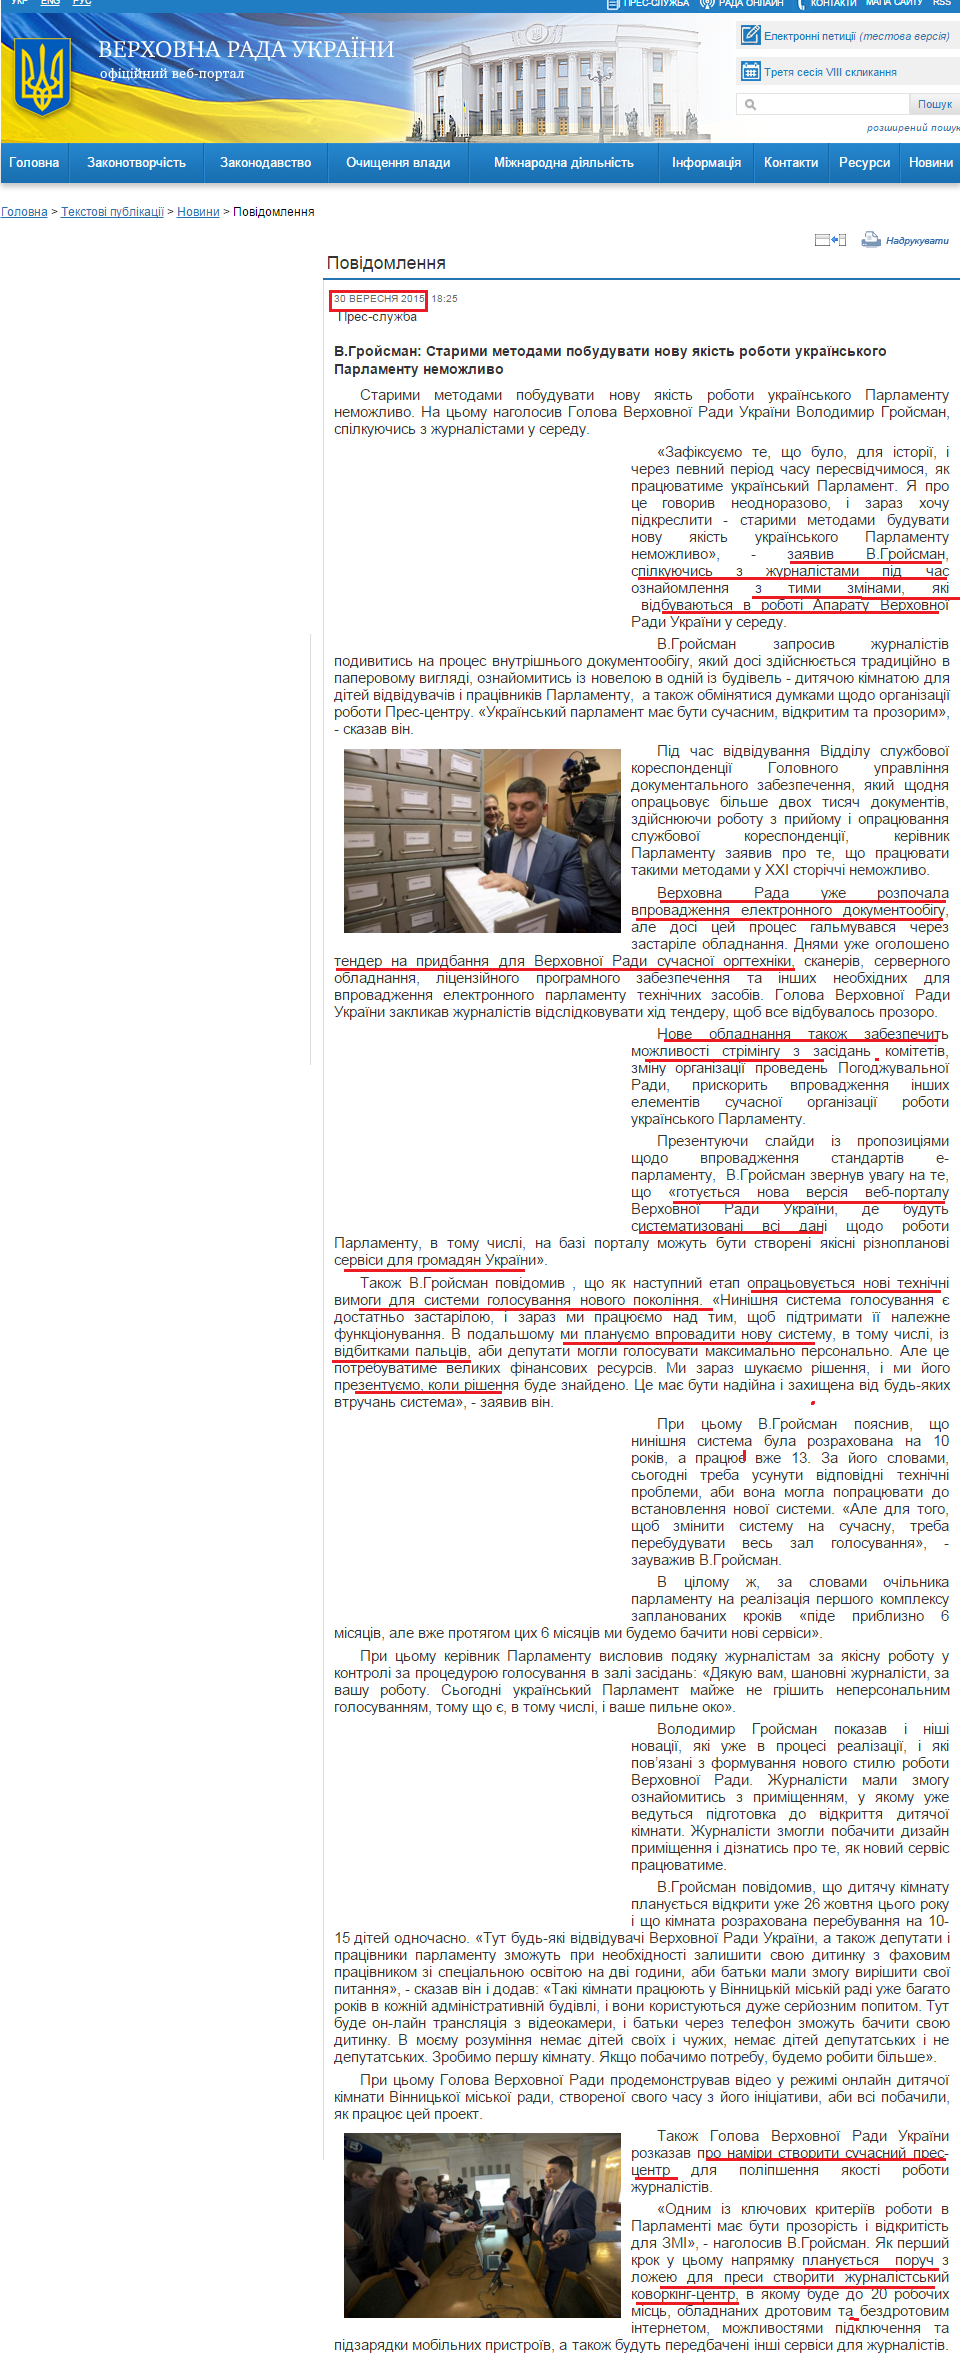 http://rada.gov.ua/news/Top-novyna/116328.html